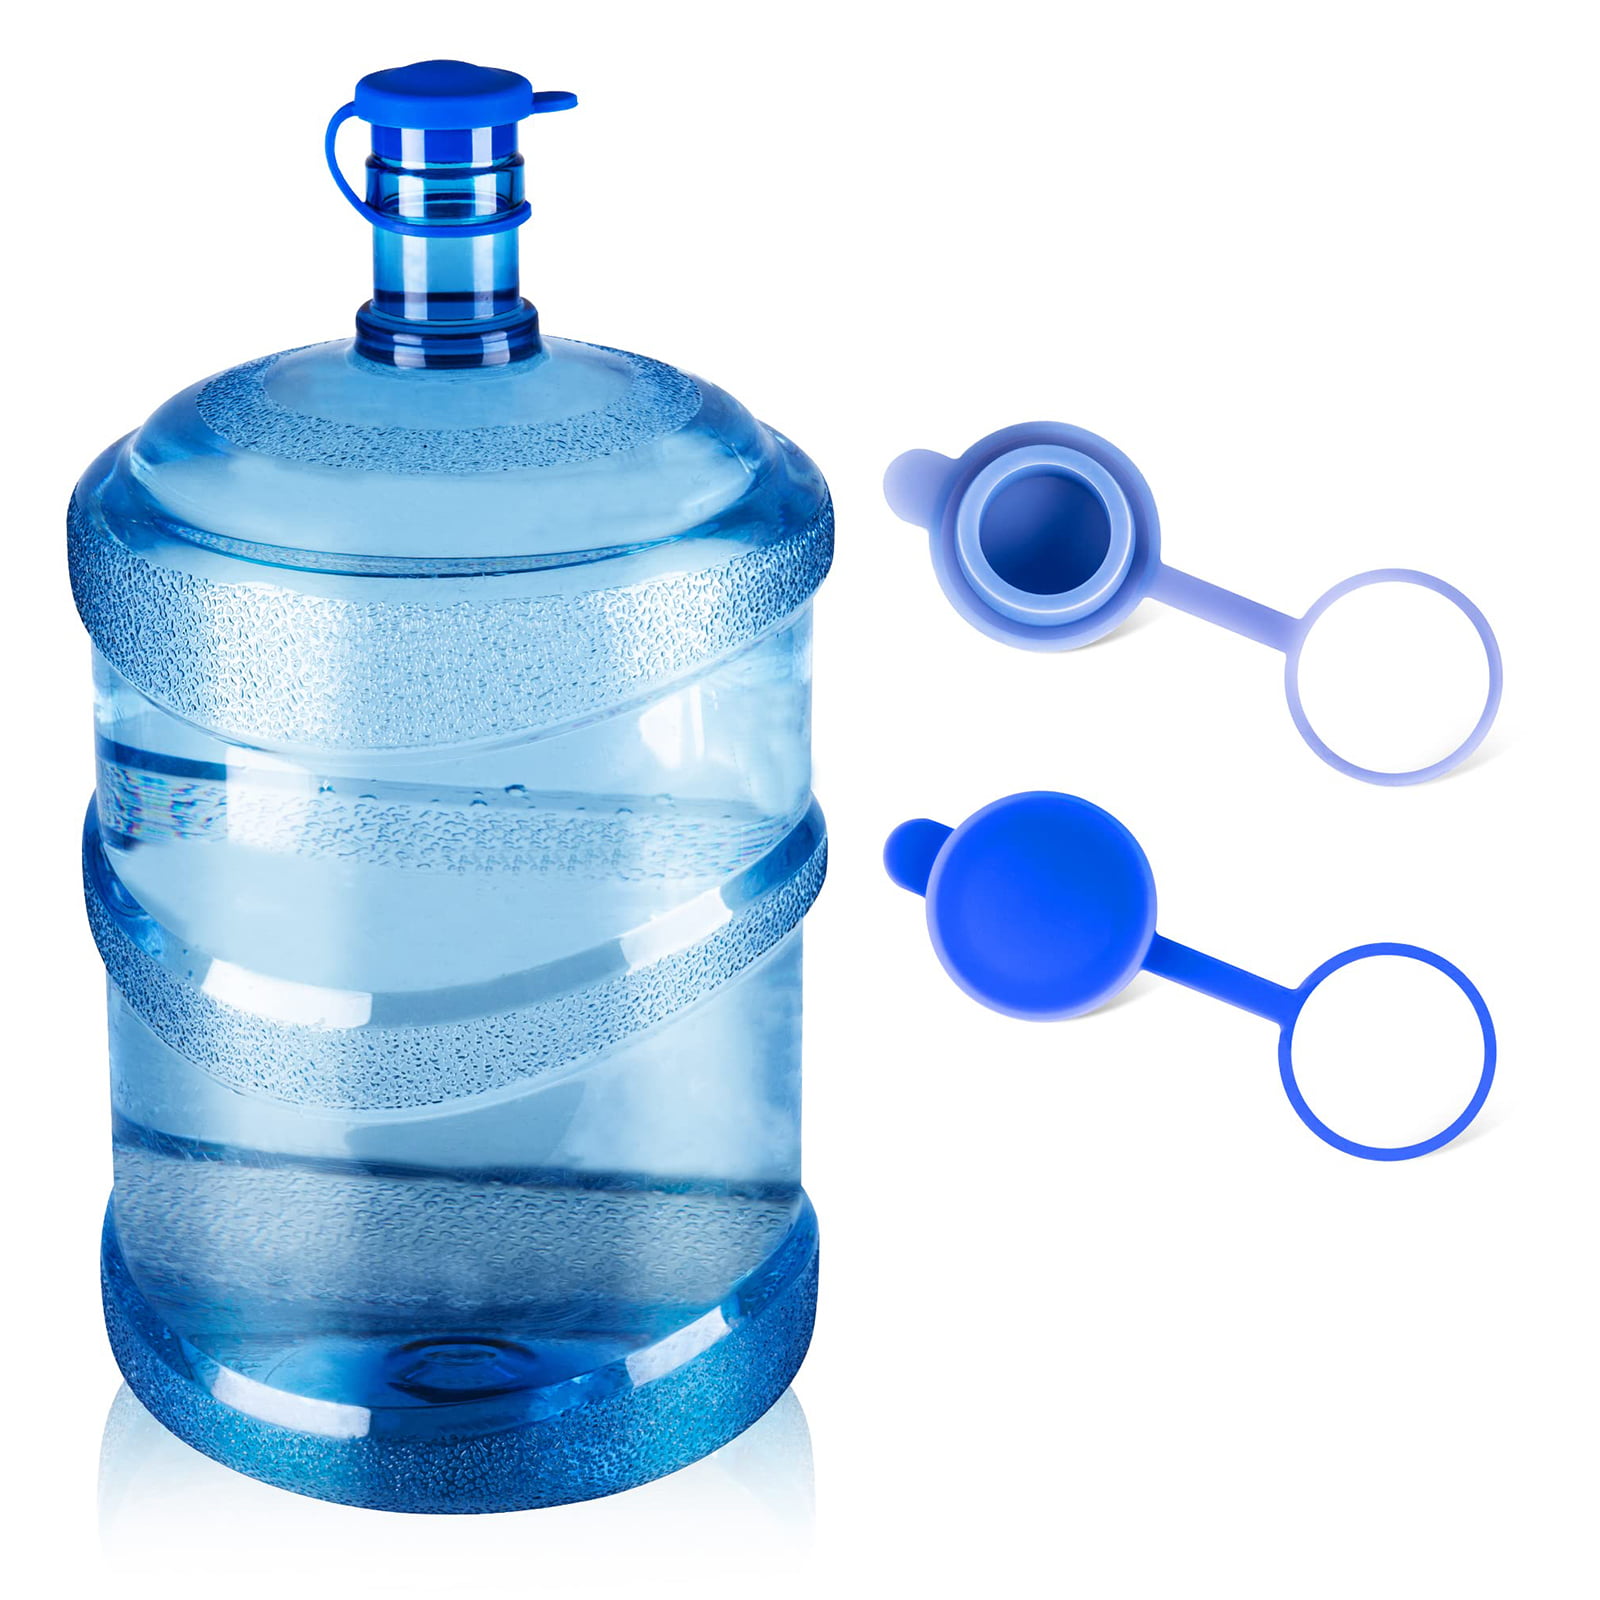 Details about   5Pcs 3-5 Gallon Water Bottle Non-Spill Cap Jug Container Bucket Dispenser Lids 